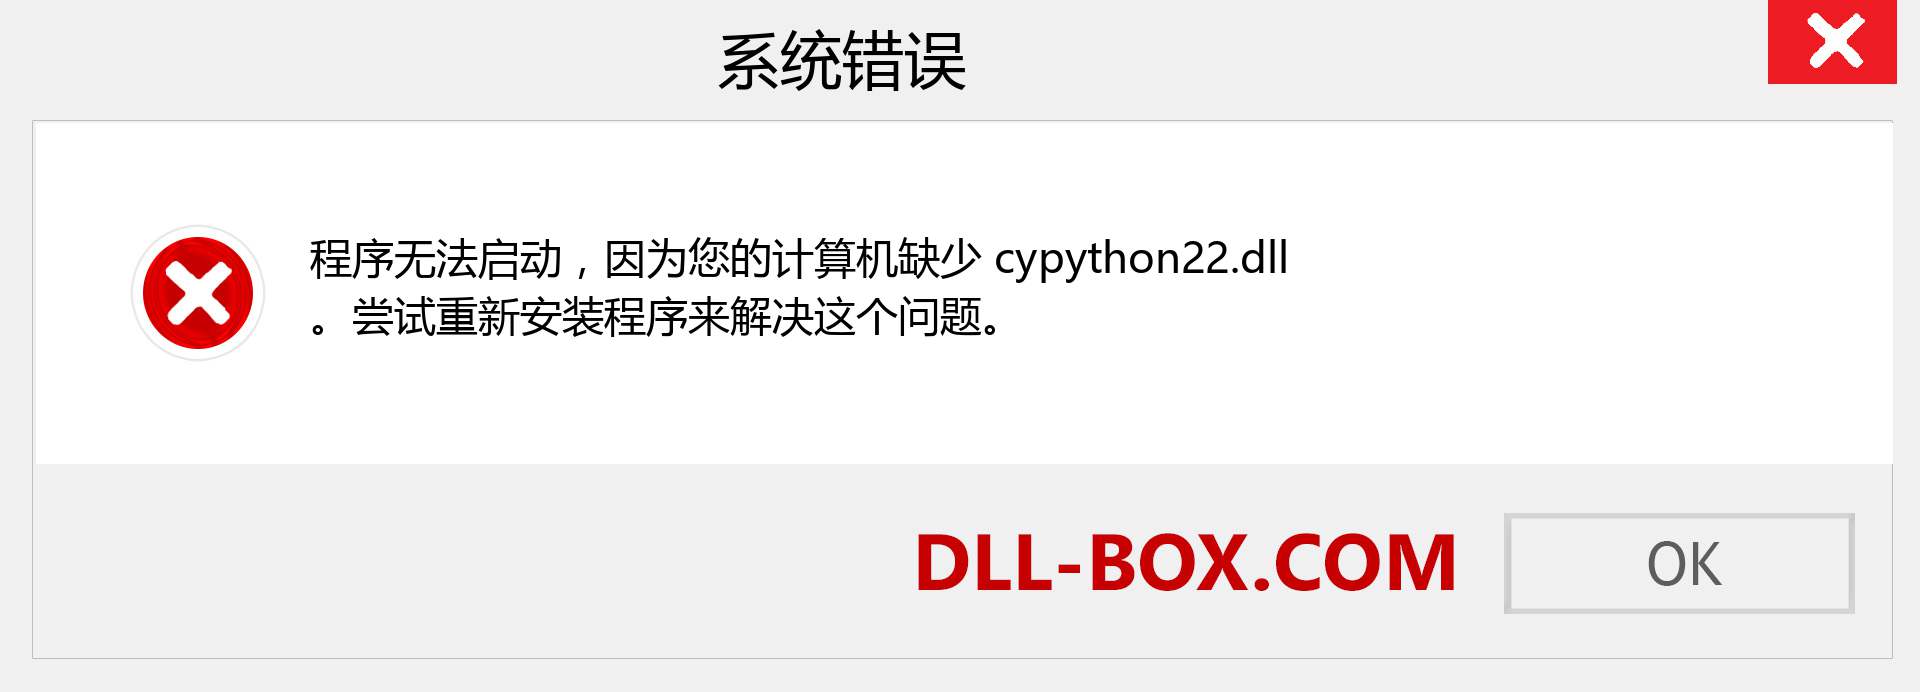 cypython22.dll 文件丢失？。 适用于 Windows 7、8、10 的下载 - 修复 Windows、照片、图像上的 cypython22 dll 丢失错误